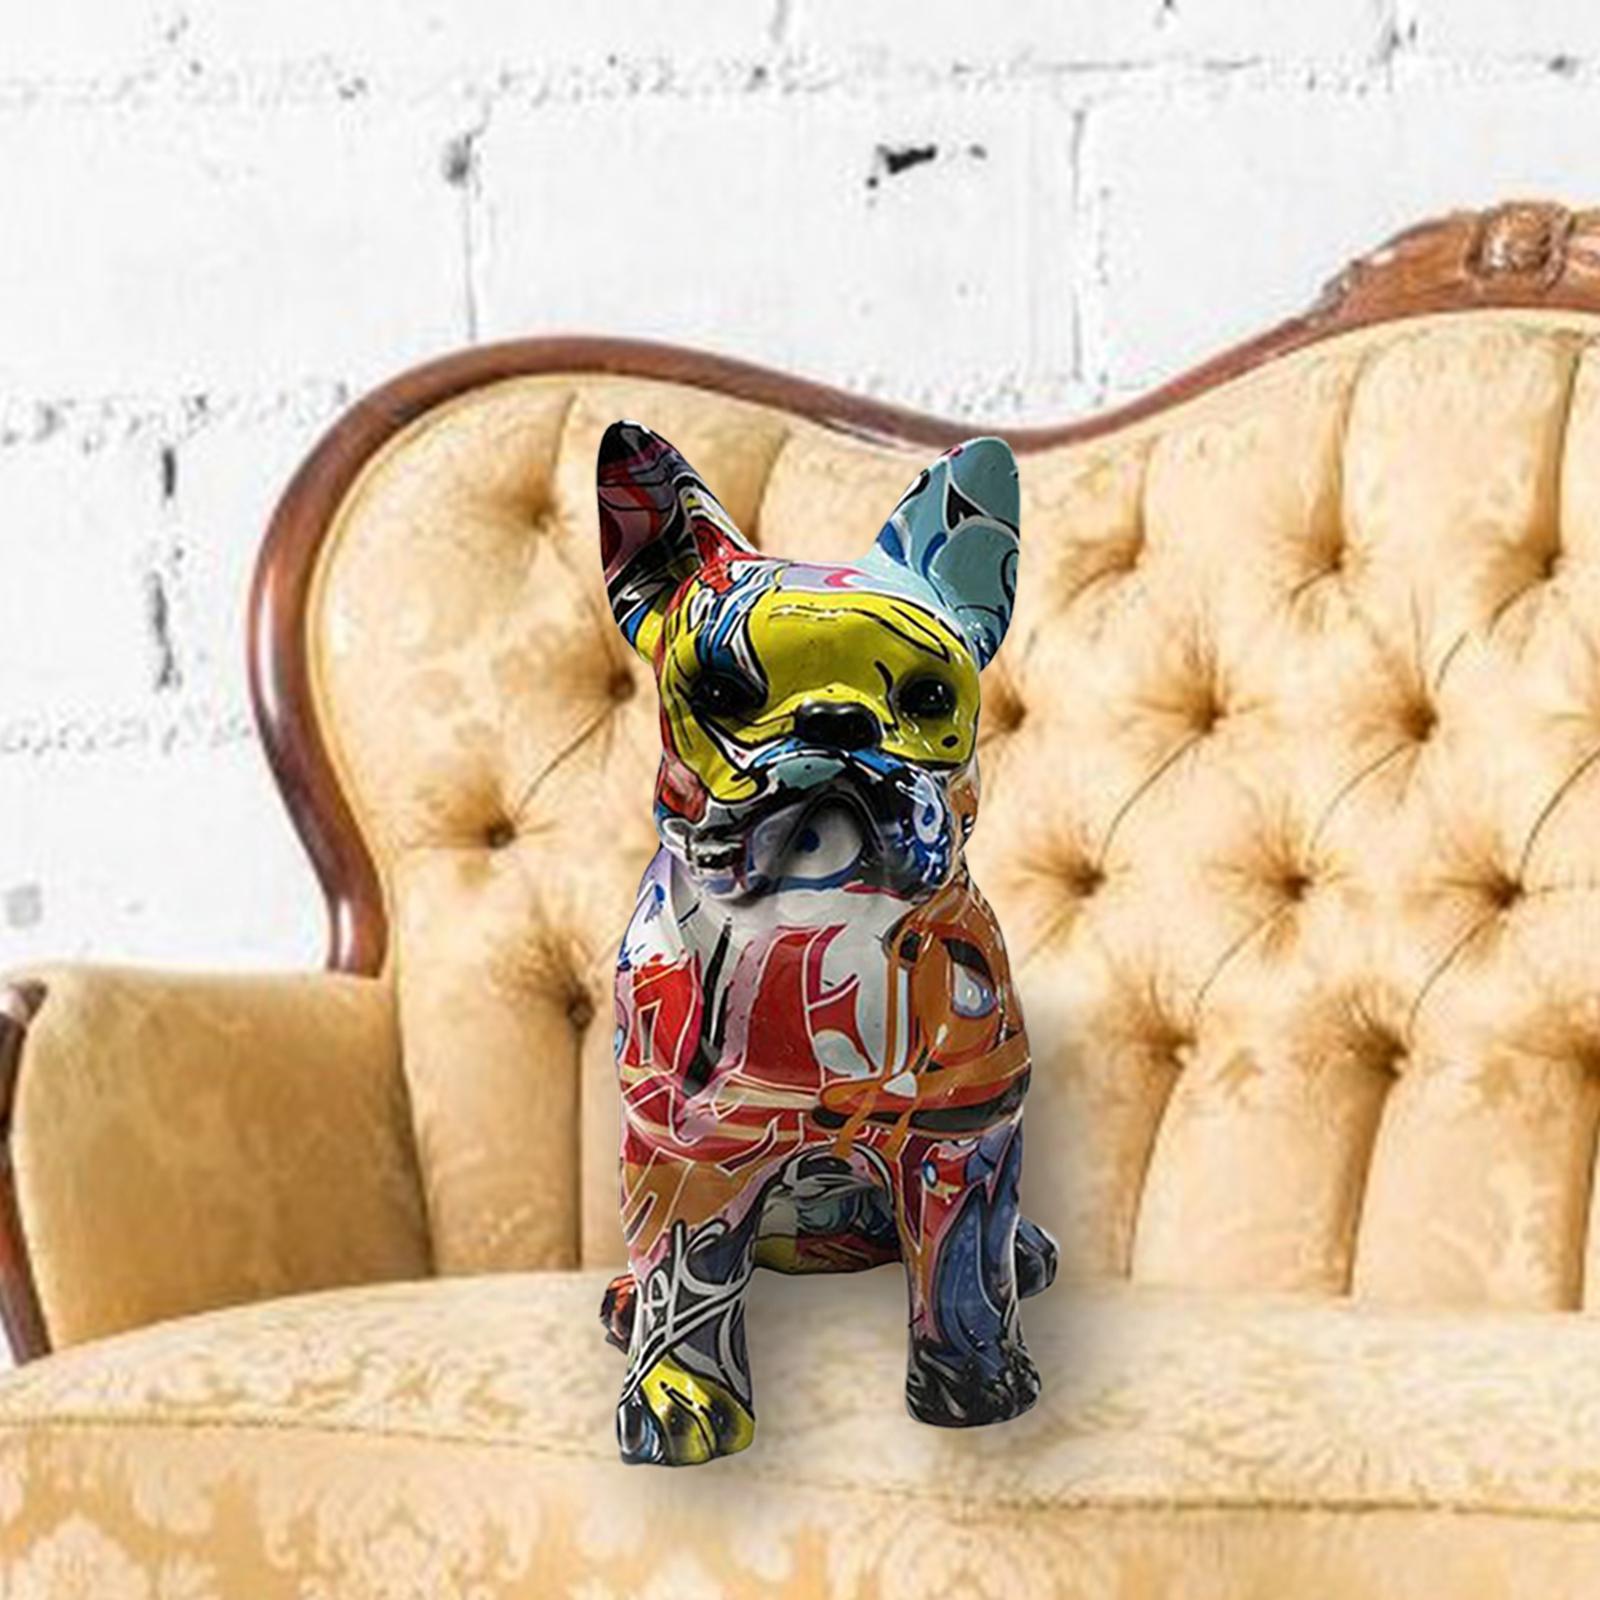 Graffiti Art Dog Statue Dog Art Figurine Sculpture Home Desktop Office Decor